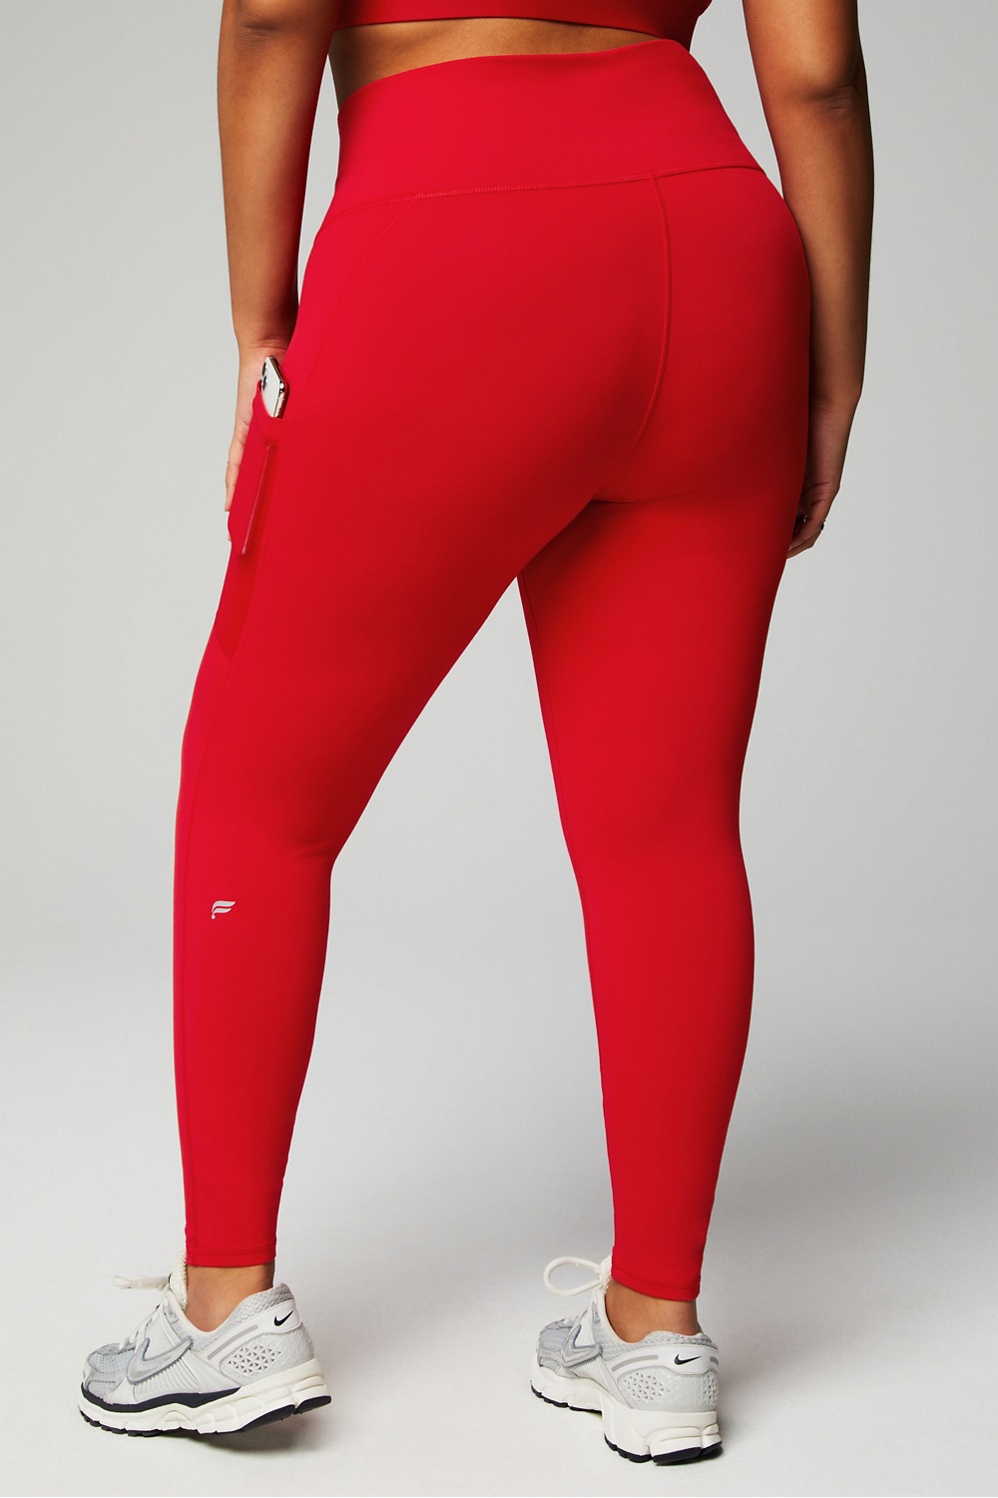 Bundle: Skin leggings in Red + Skin bandeau in Red